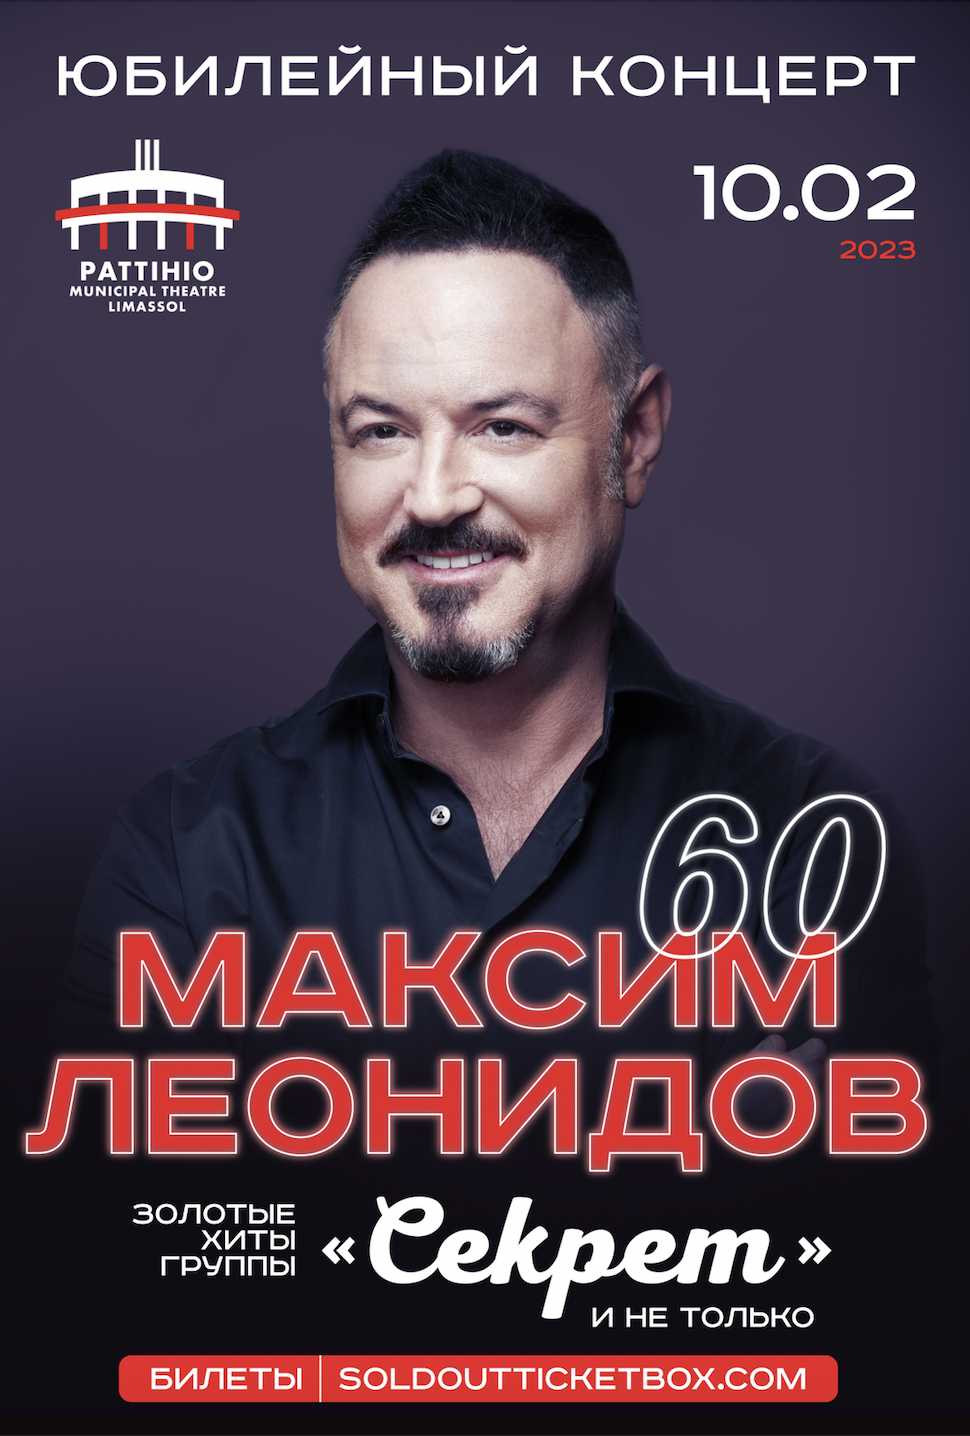 МАКСИМ ЛЕОНИДОВ – Юбилейный концерт